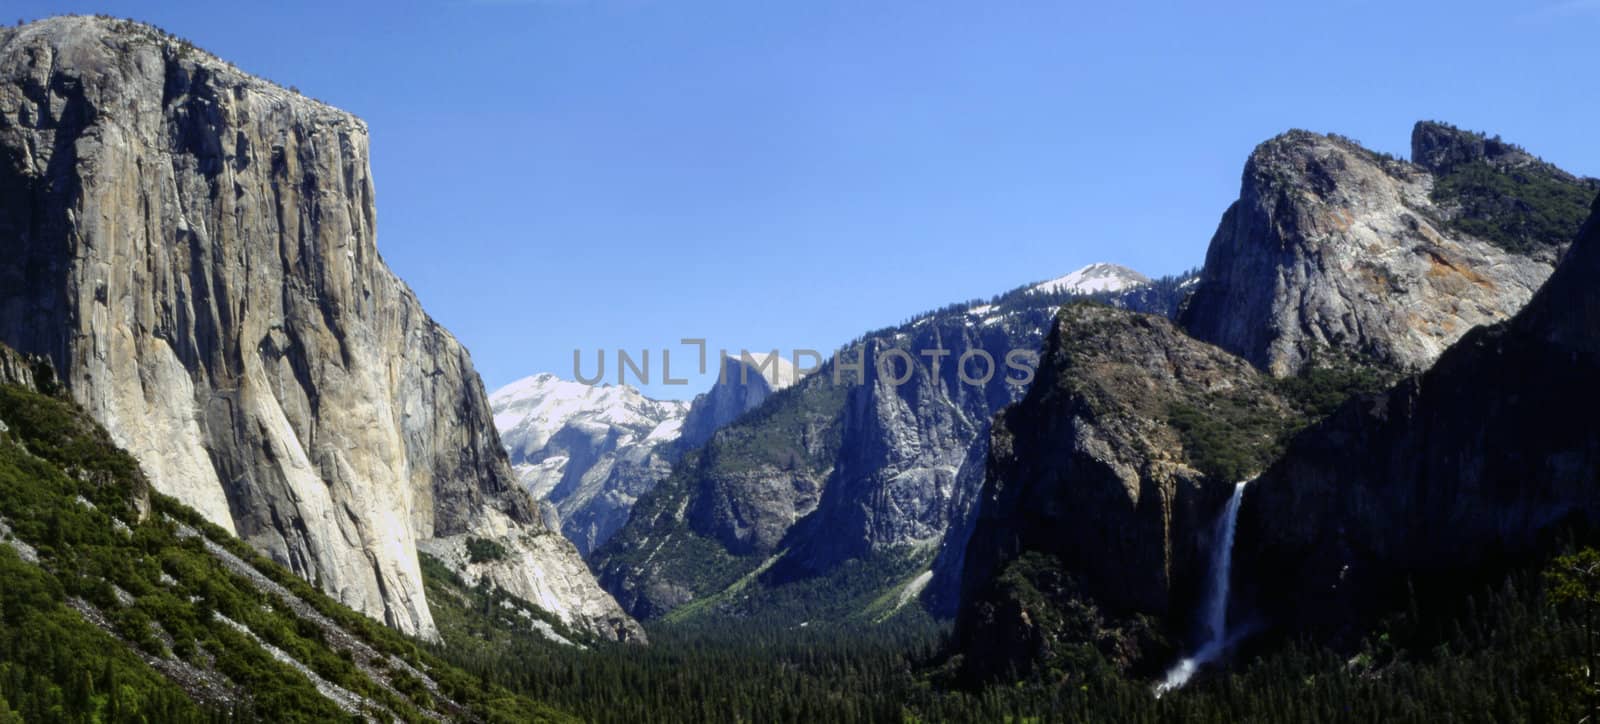 Yosemite Valley by jol66